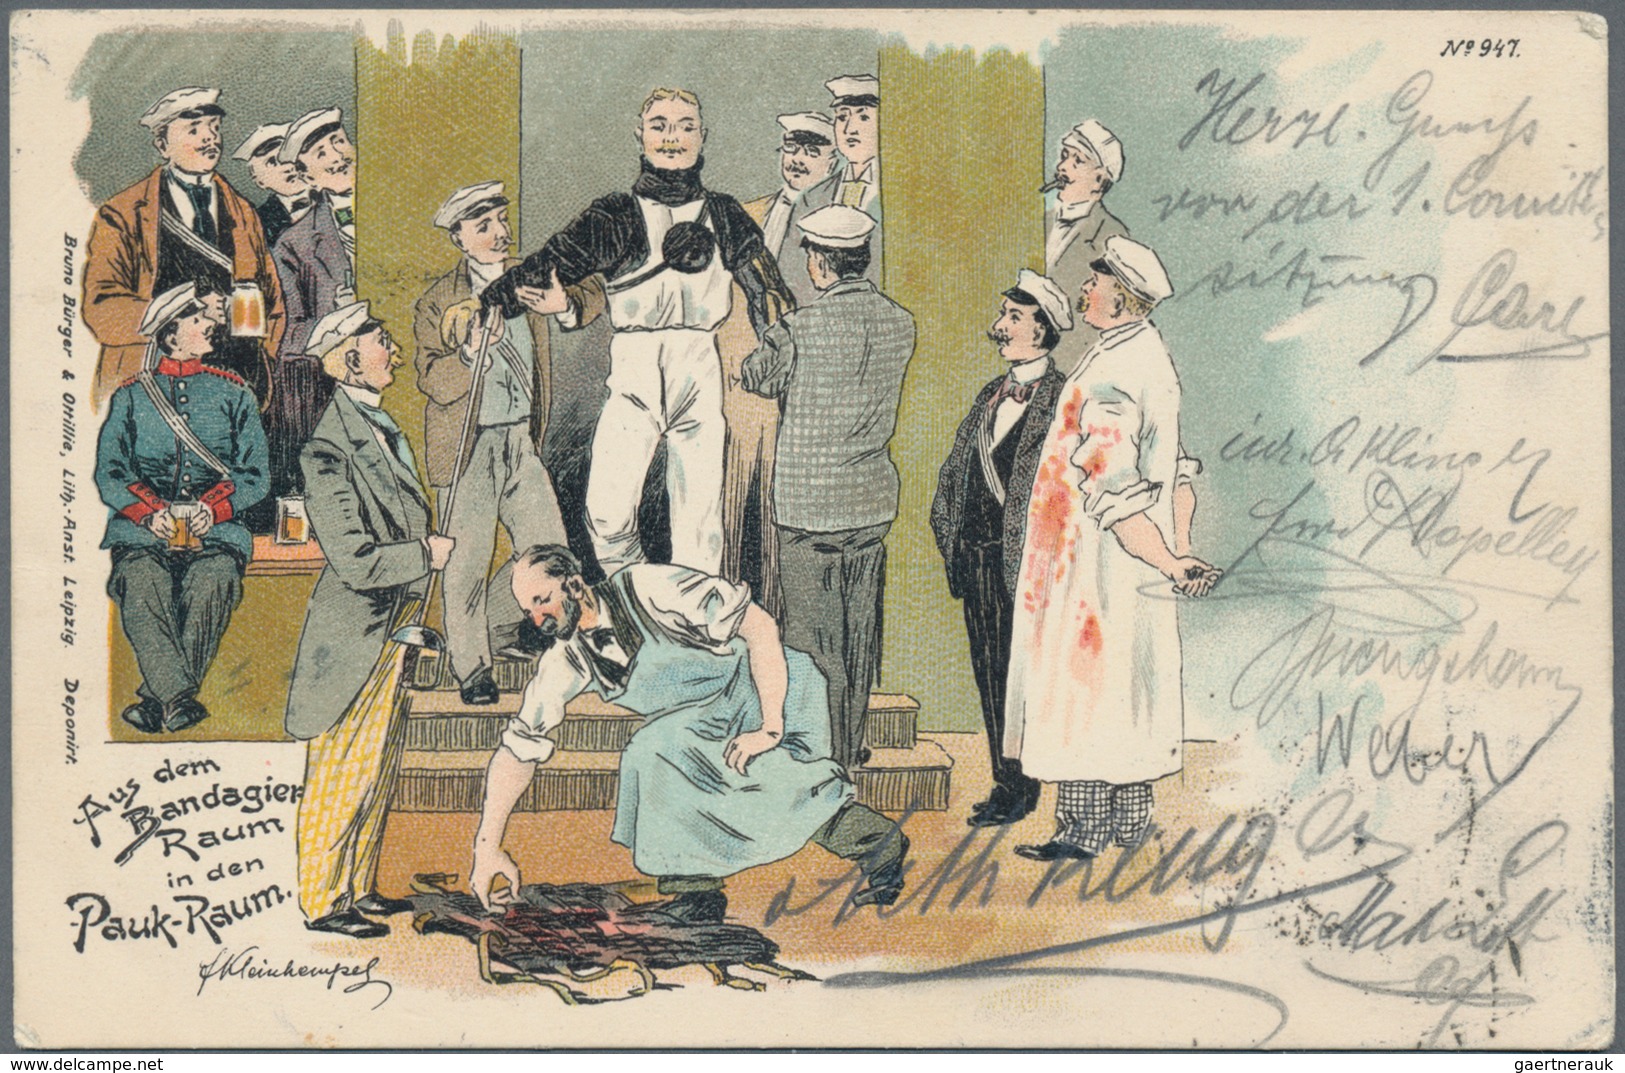 Ansichtskarten: MOTIVE, Eine Reichhaltige Auswahl An Gut 500 Historischen Ansichtskarten Ab Ca. 1898 - 500 Postkaarten Min.